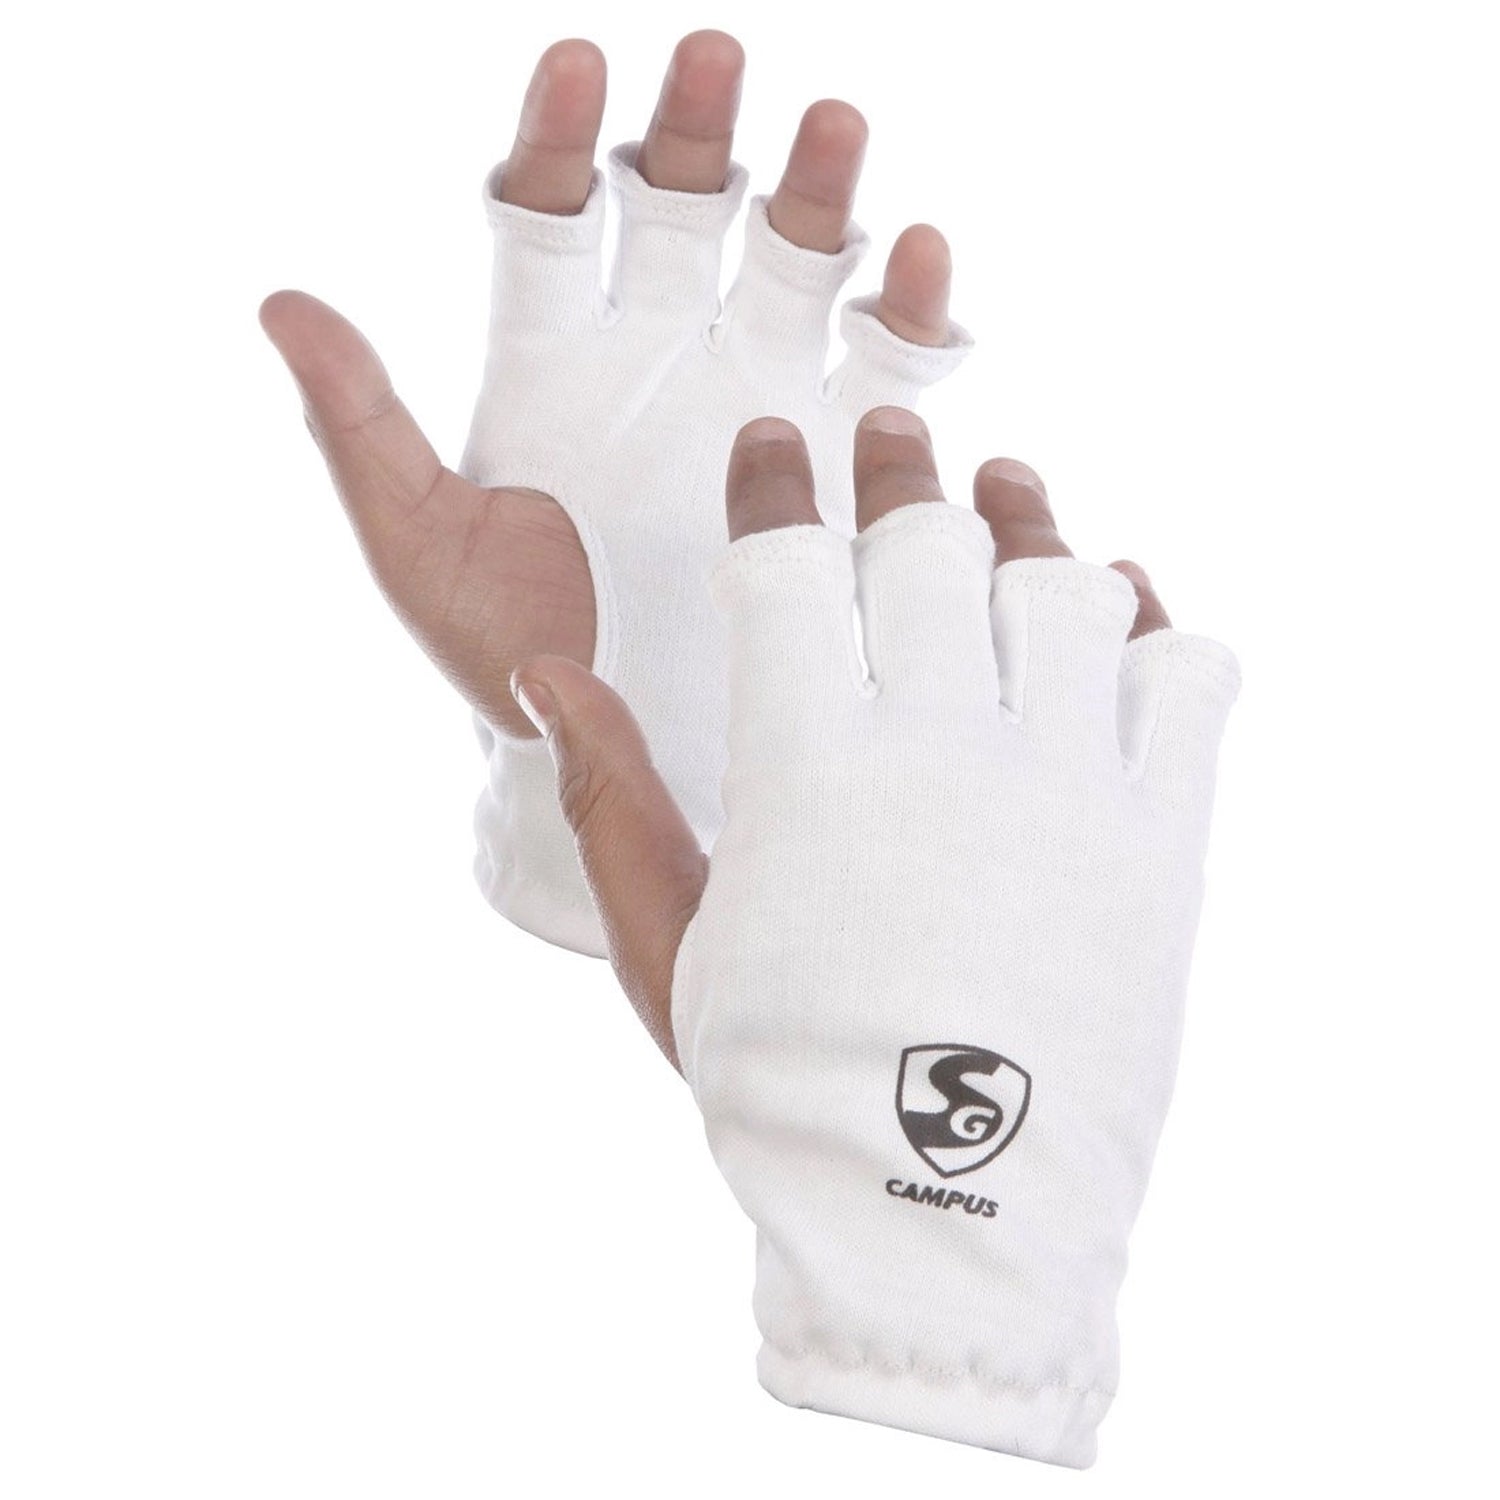 SG Campus Inner Gloves - Best Price online Prokicksports.com